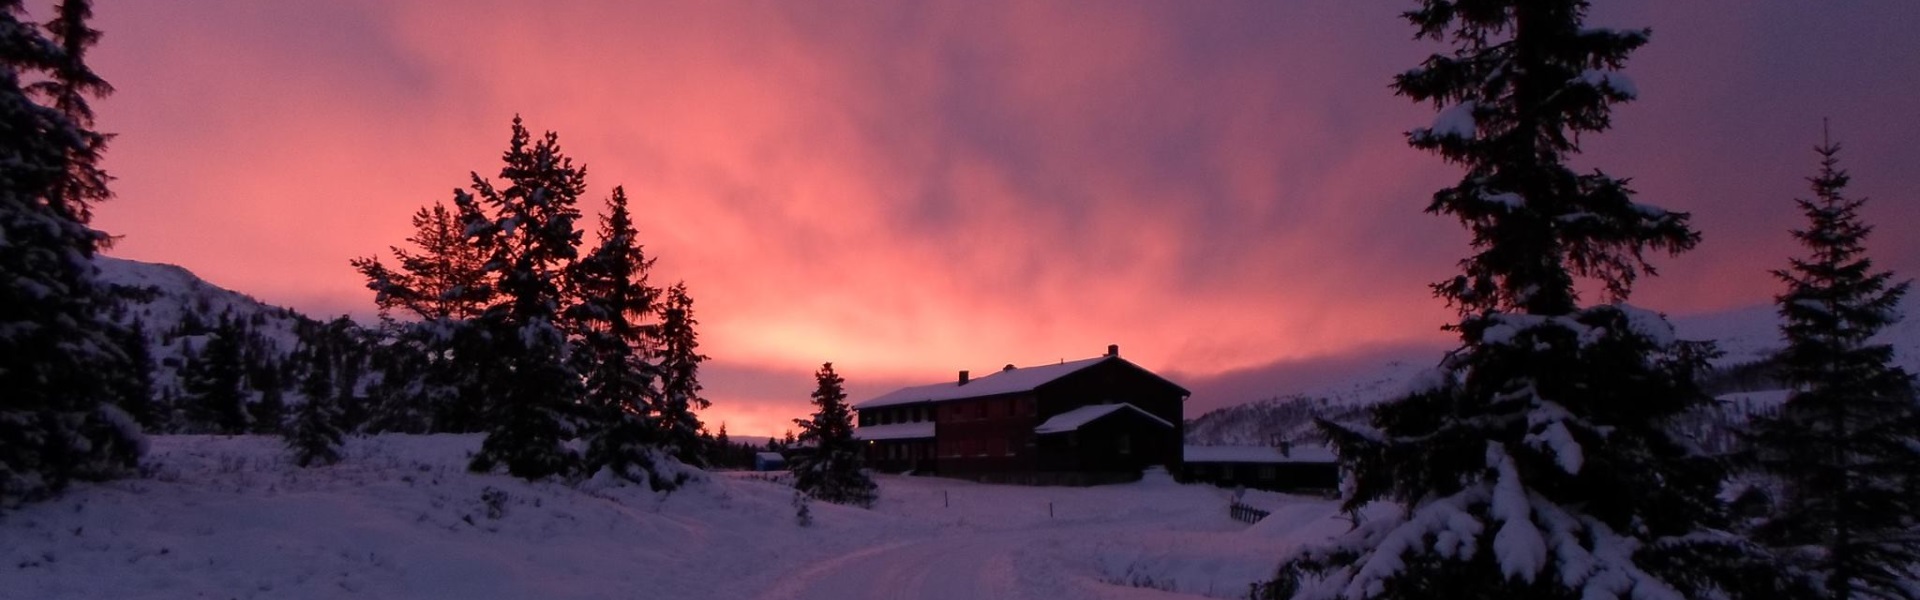 Besøk Rondane Fjellstue denne vinteren!